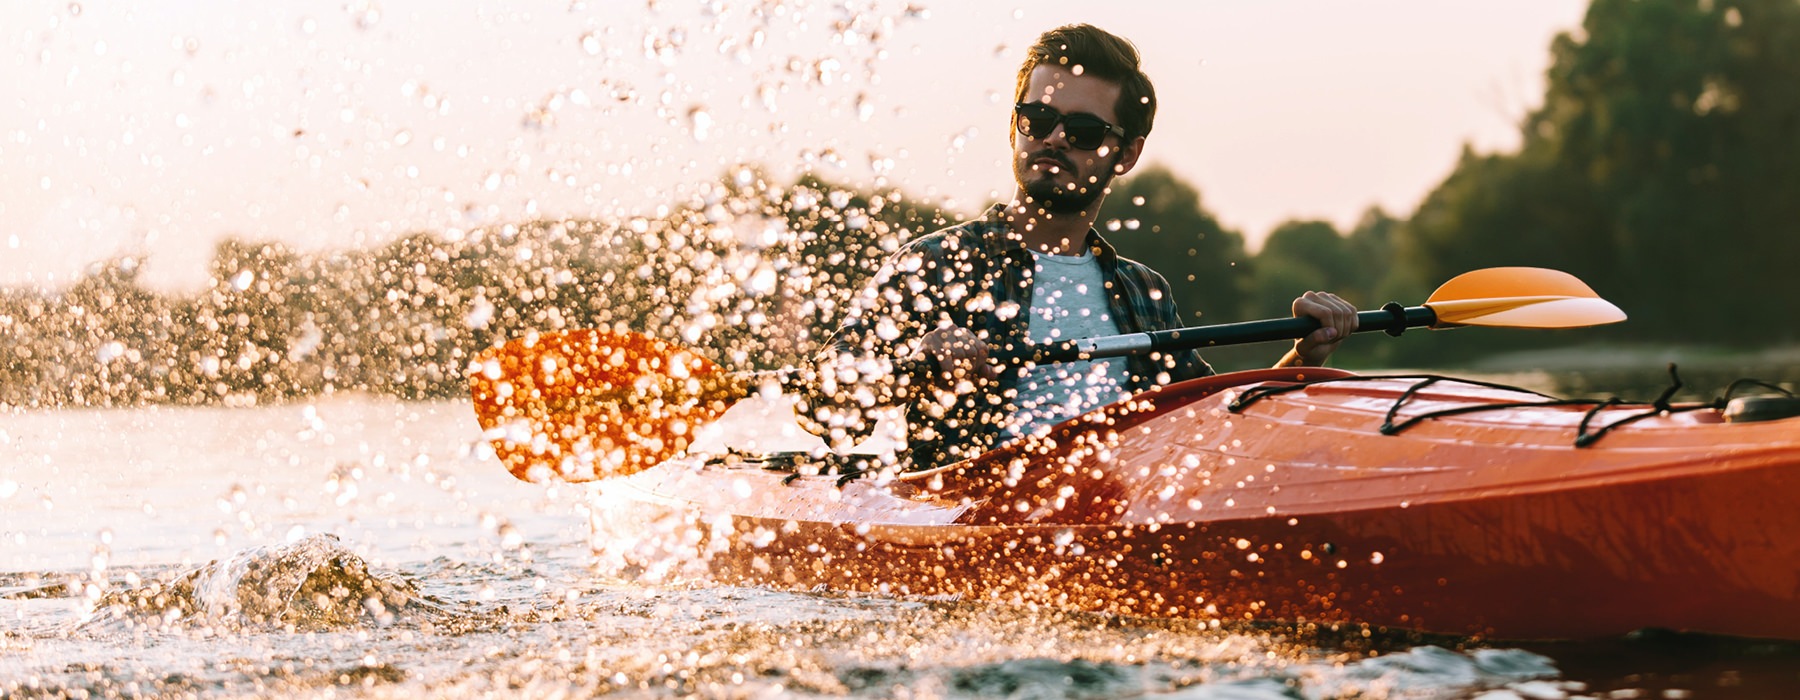 Young man kayaking in a lake